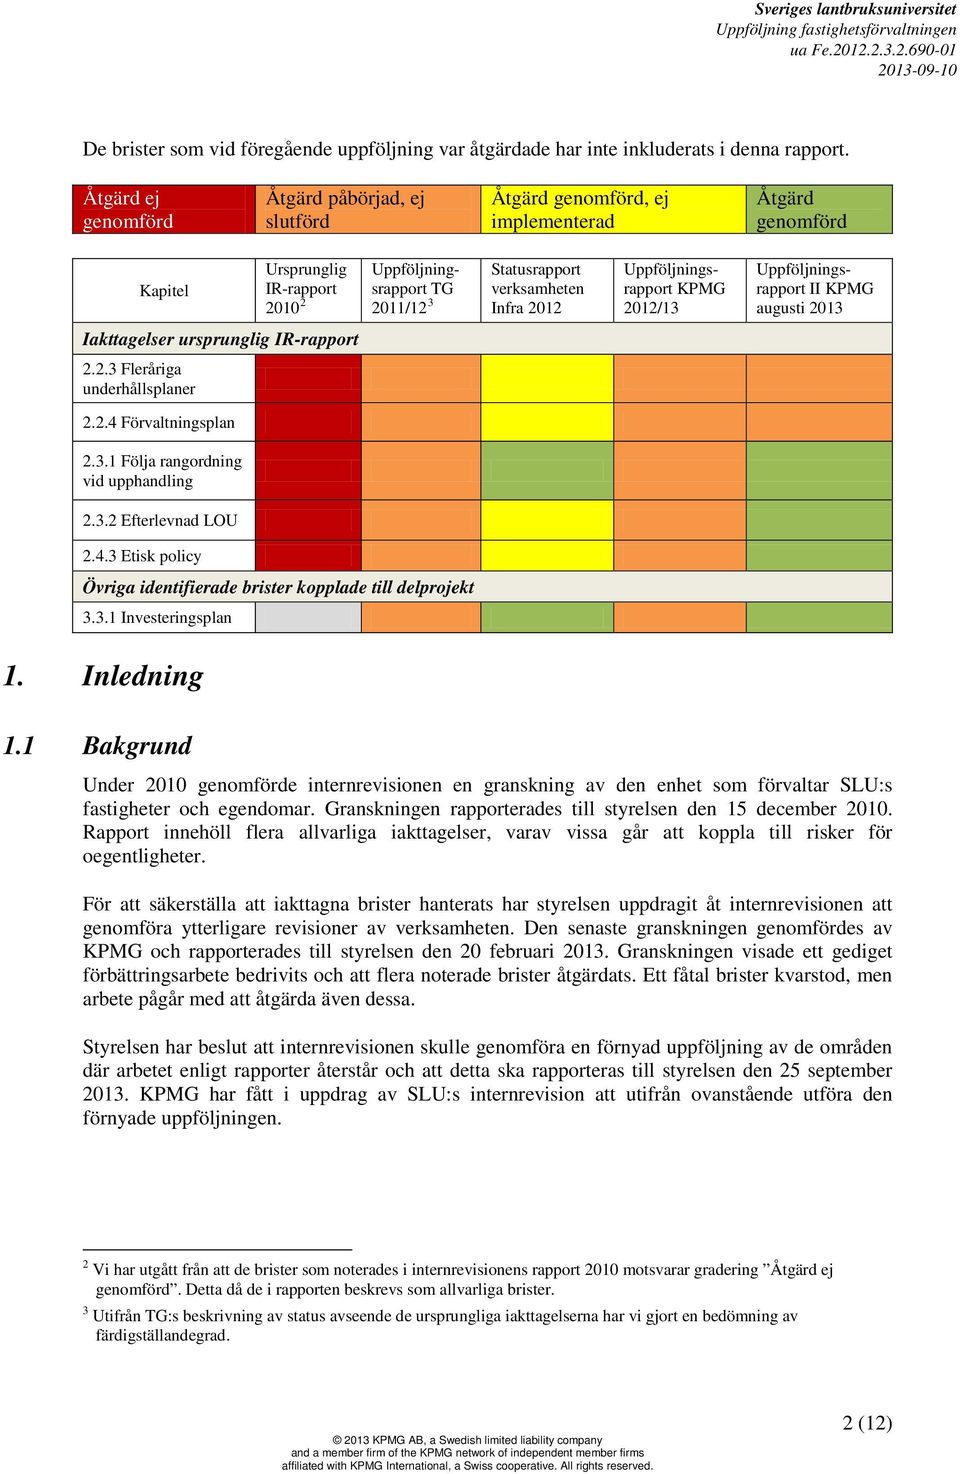 Infra 2012 Uppföljningsrapport KPMG 2012/13 Uppföljningsrapport II KPMG augusti 2013 Iakttagelser ursprunglig IR-rapport 2.2.3 Fleråriga underhållsplaner 2.2.4 Förvaltningsplan 2.3.1 Följa rangordning vid upphandling 2.